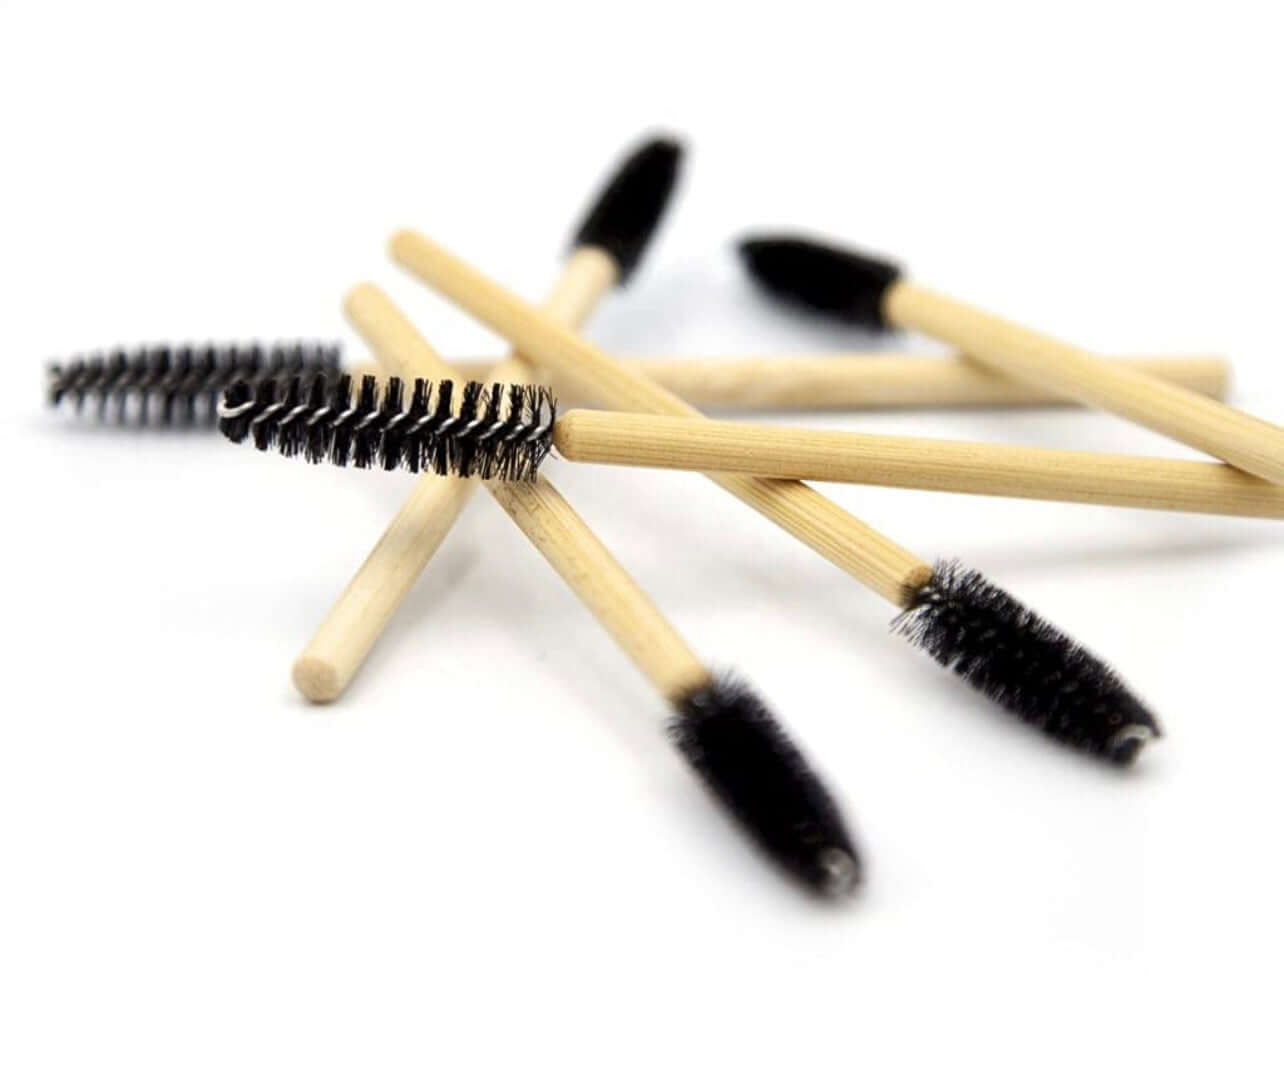 Bamboo mascara wands, eyelash brush, 50 pack, spoolie, sustainable beauty products